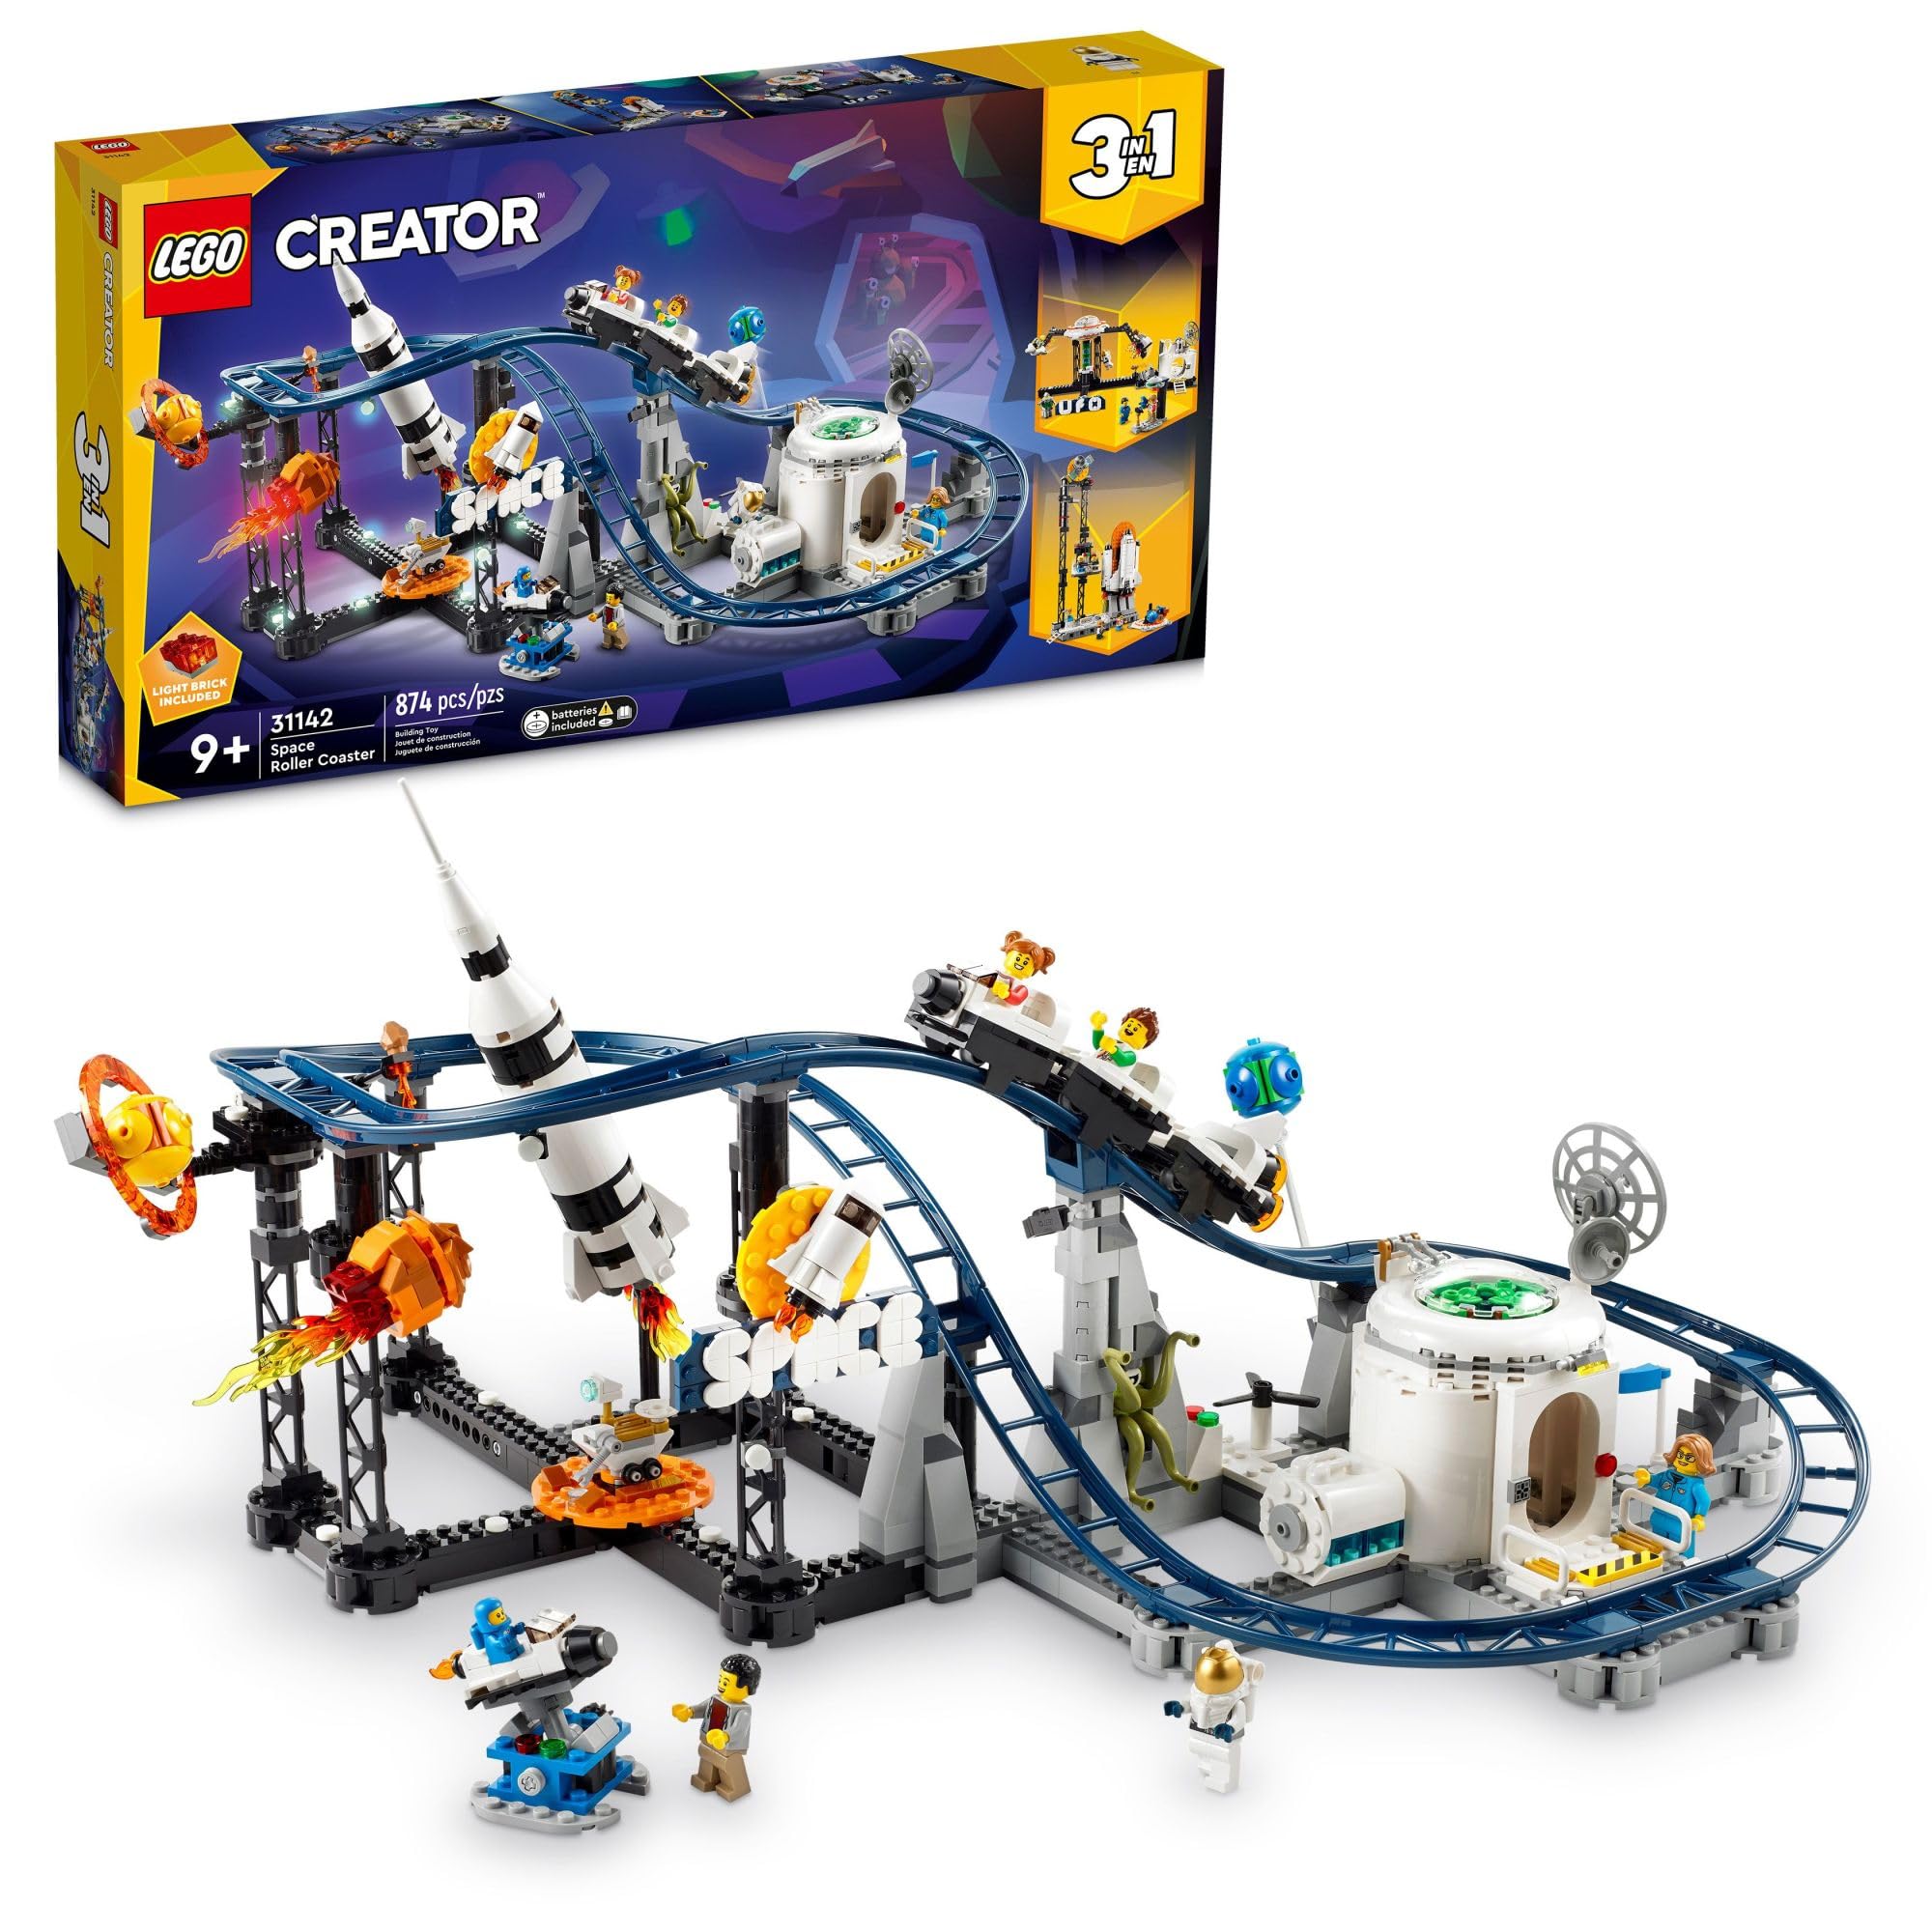  LEGO Creator Space ローラーコースター 31142 3 in 1 組み立ておもちゃセット ジェットコースター、ドロップタワー、メリーゴーランドとミニフィギュア 5...